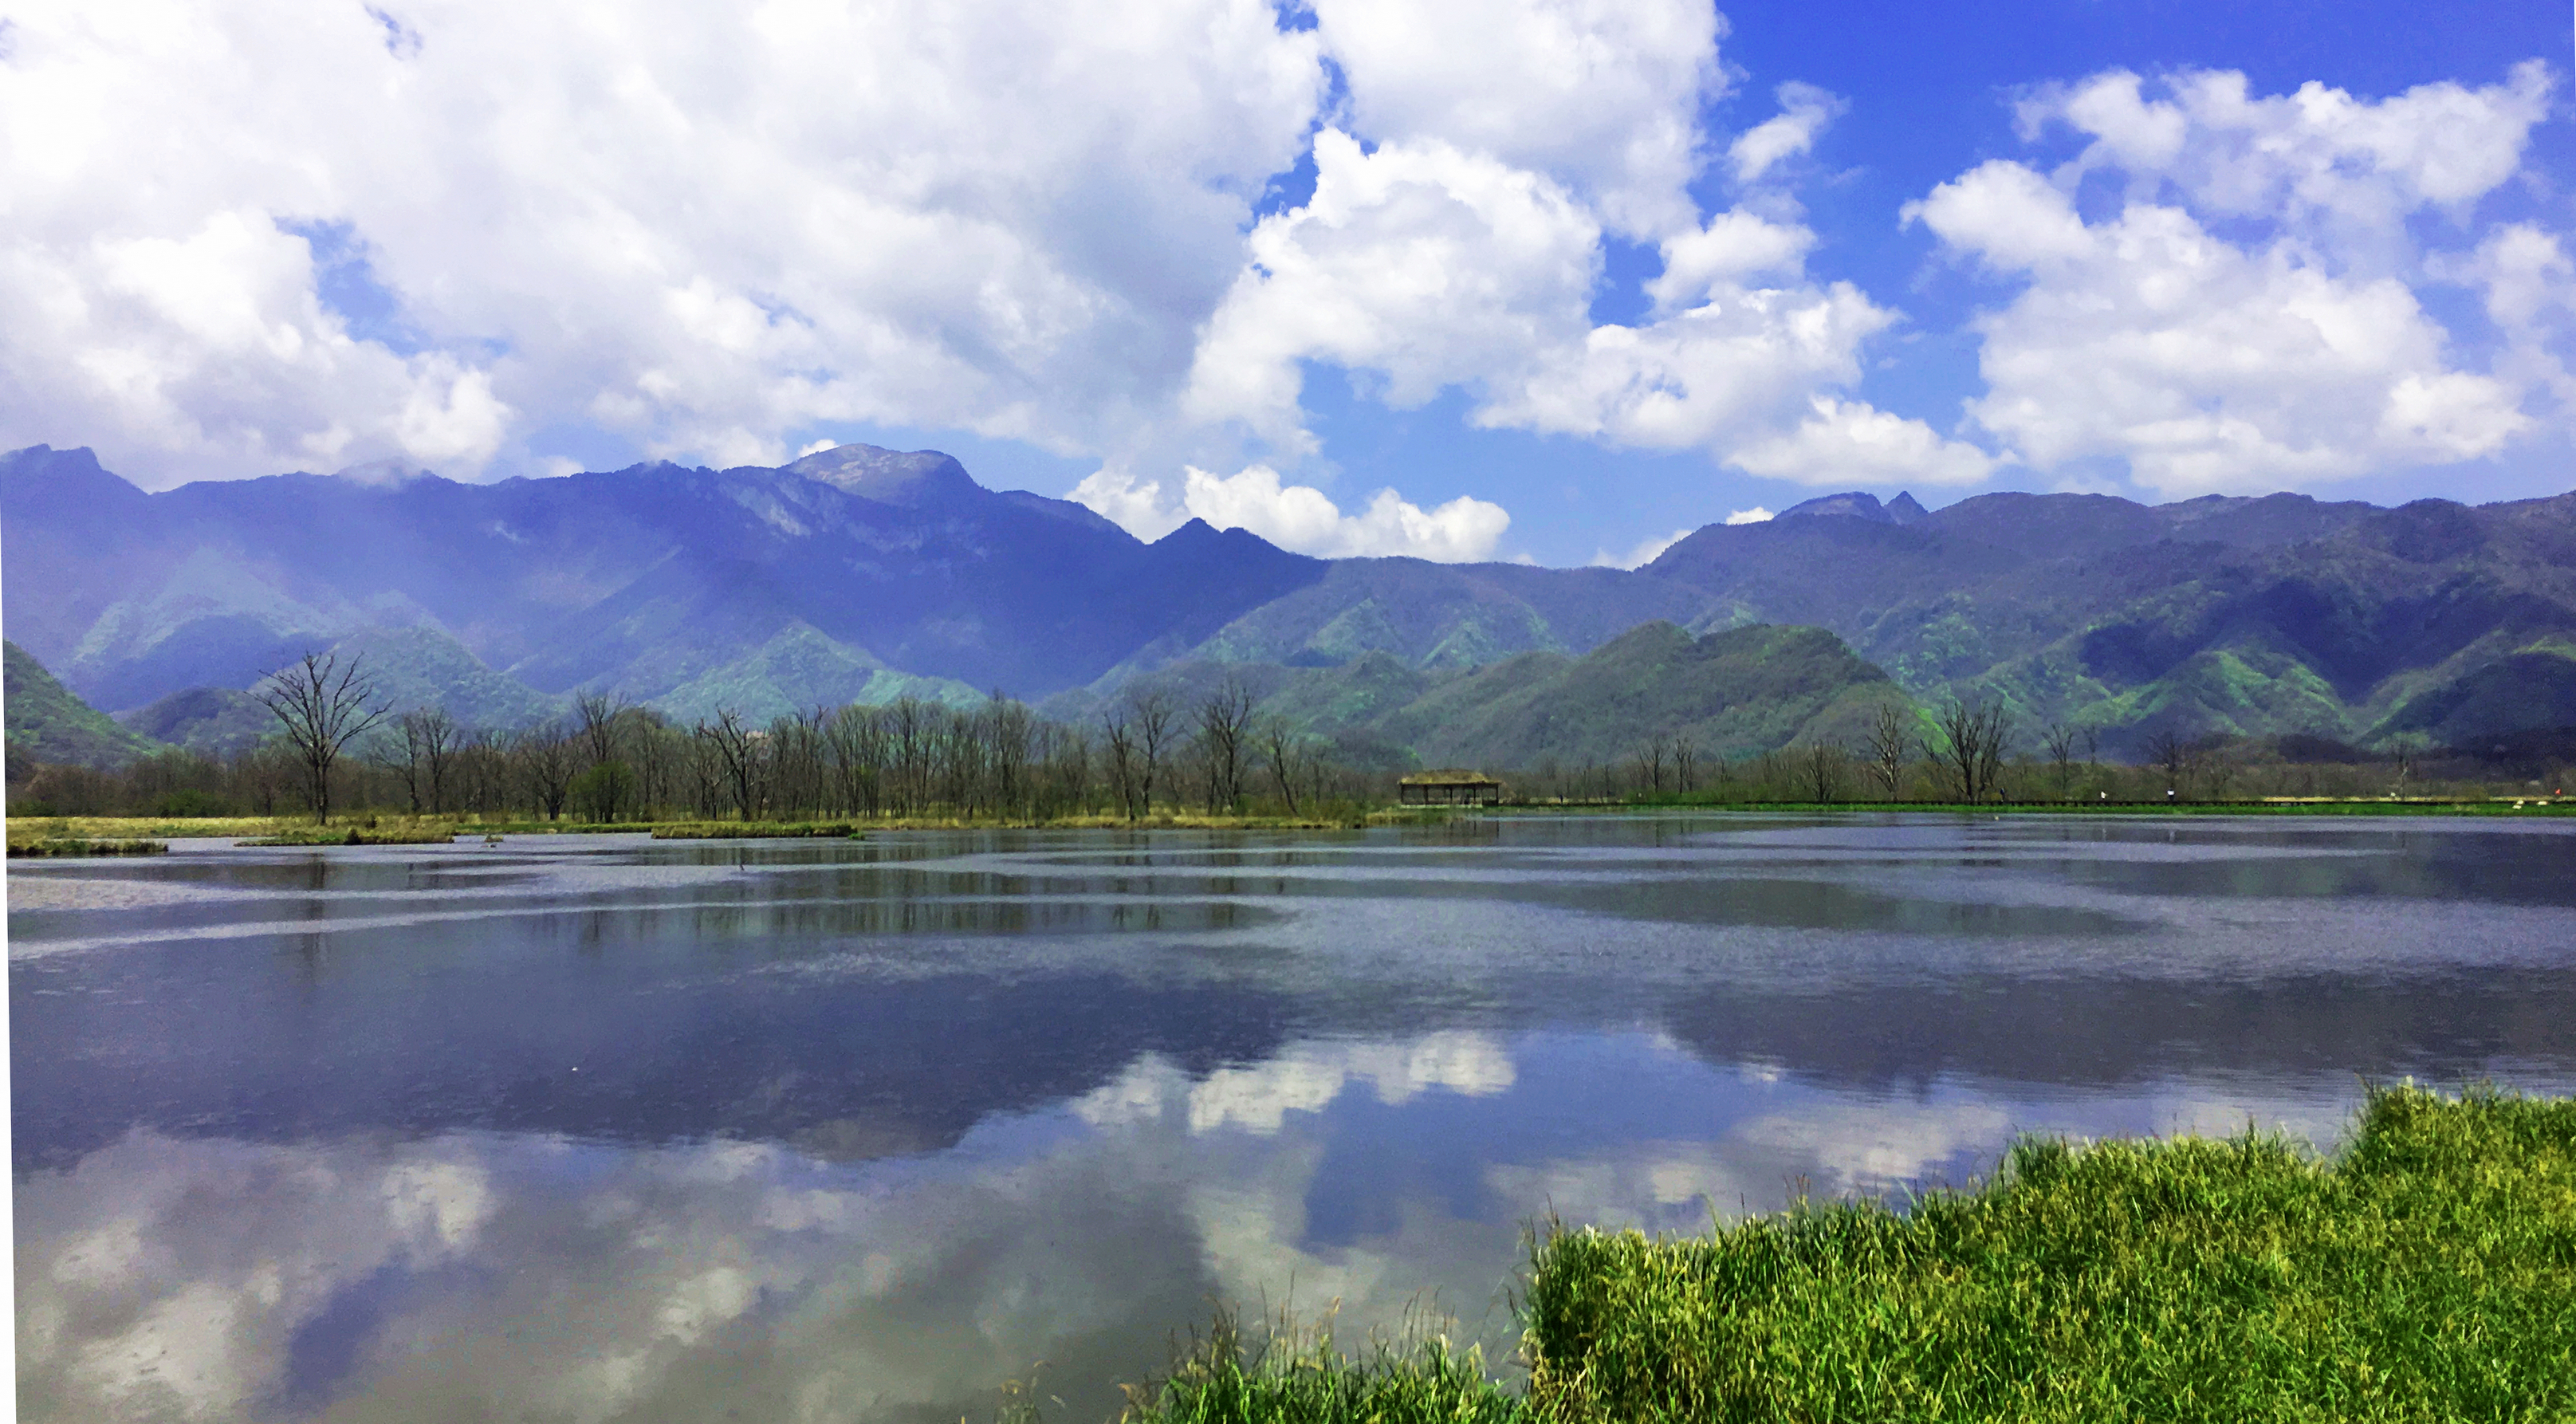 大九湖风景区旅游攻略图片